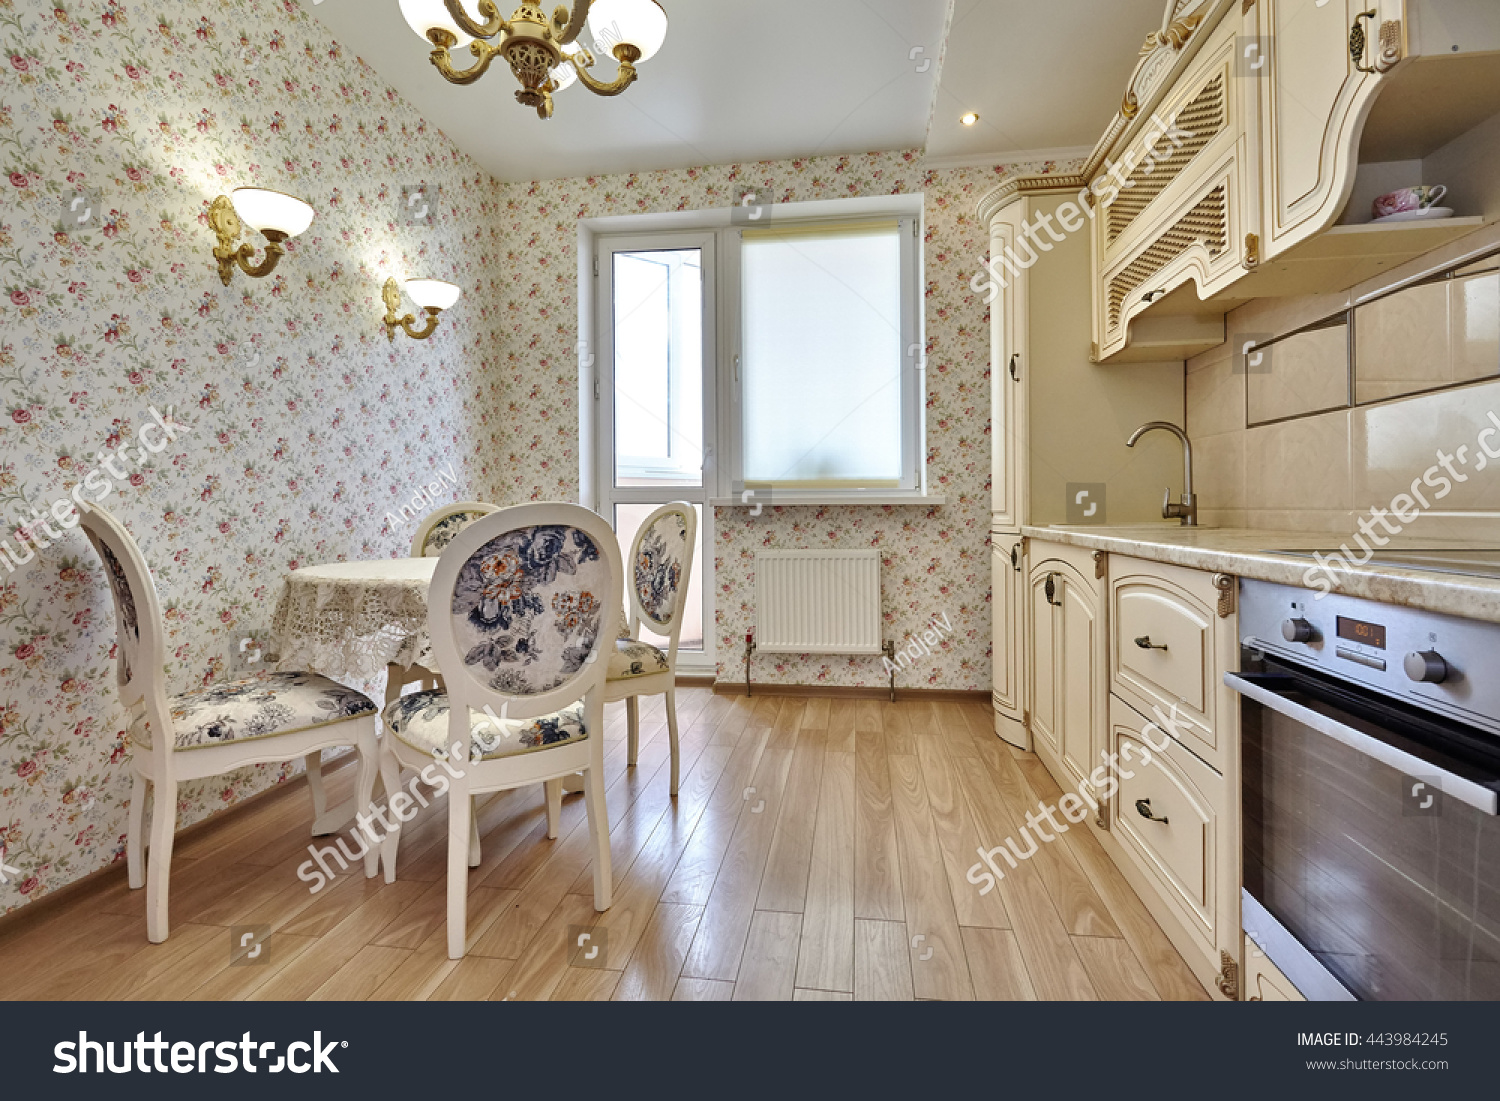 Кухни реальные фото в квартирах обои в мелкий цветочек